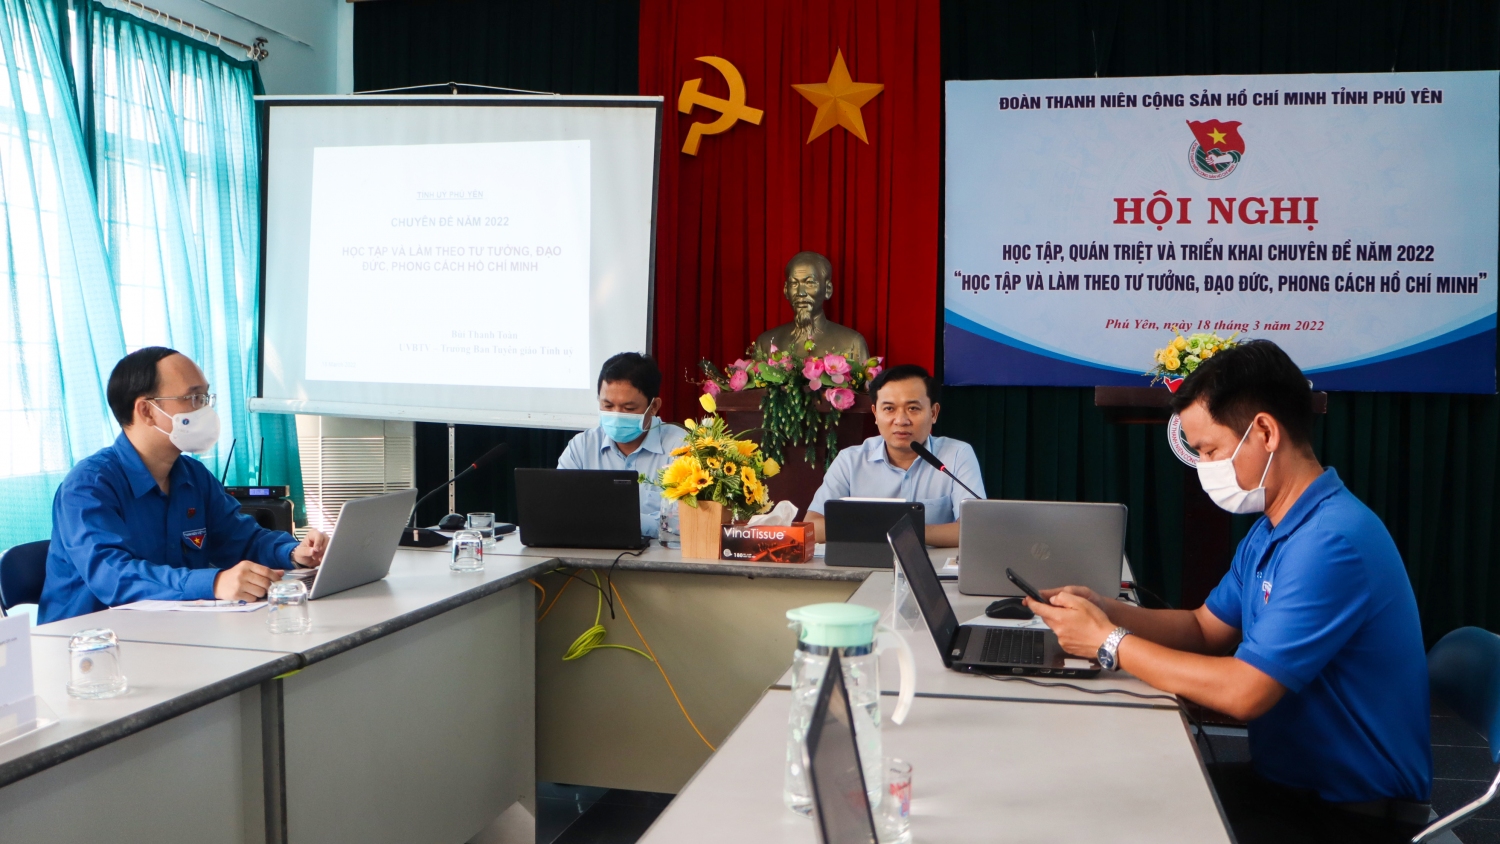 Đồng chí Bùi Thanh Toàn - Ủy viên Ban Thường vụ Tỉnh ủy, Trưởng Ban Tuyên giáo Tỉnh ủy báo cáo chuyên đề năm 2022 “Học tập và làm theo tư tưởng, đạo đức, phong cách Hồ Chí Minh”.